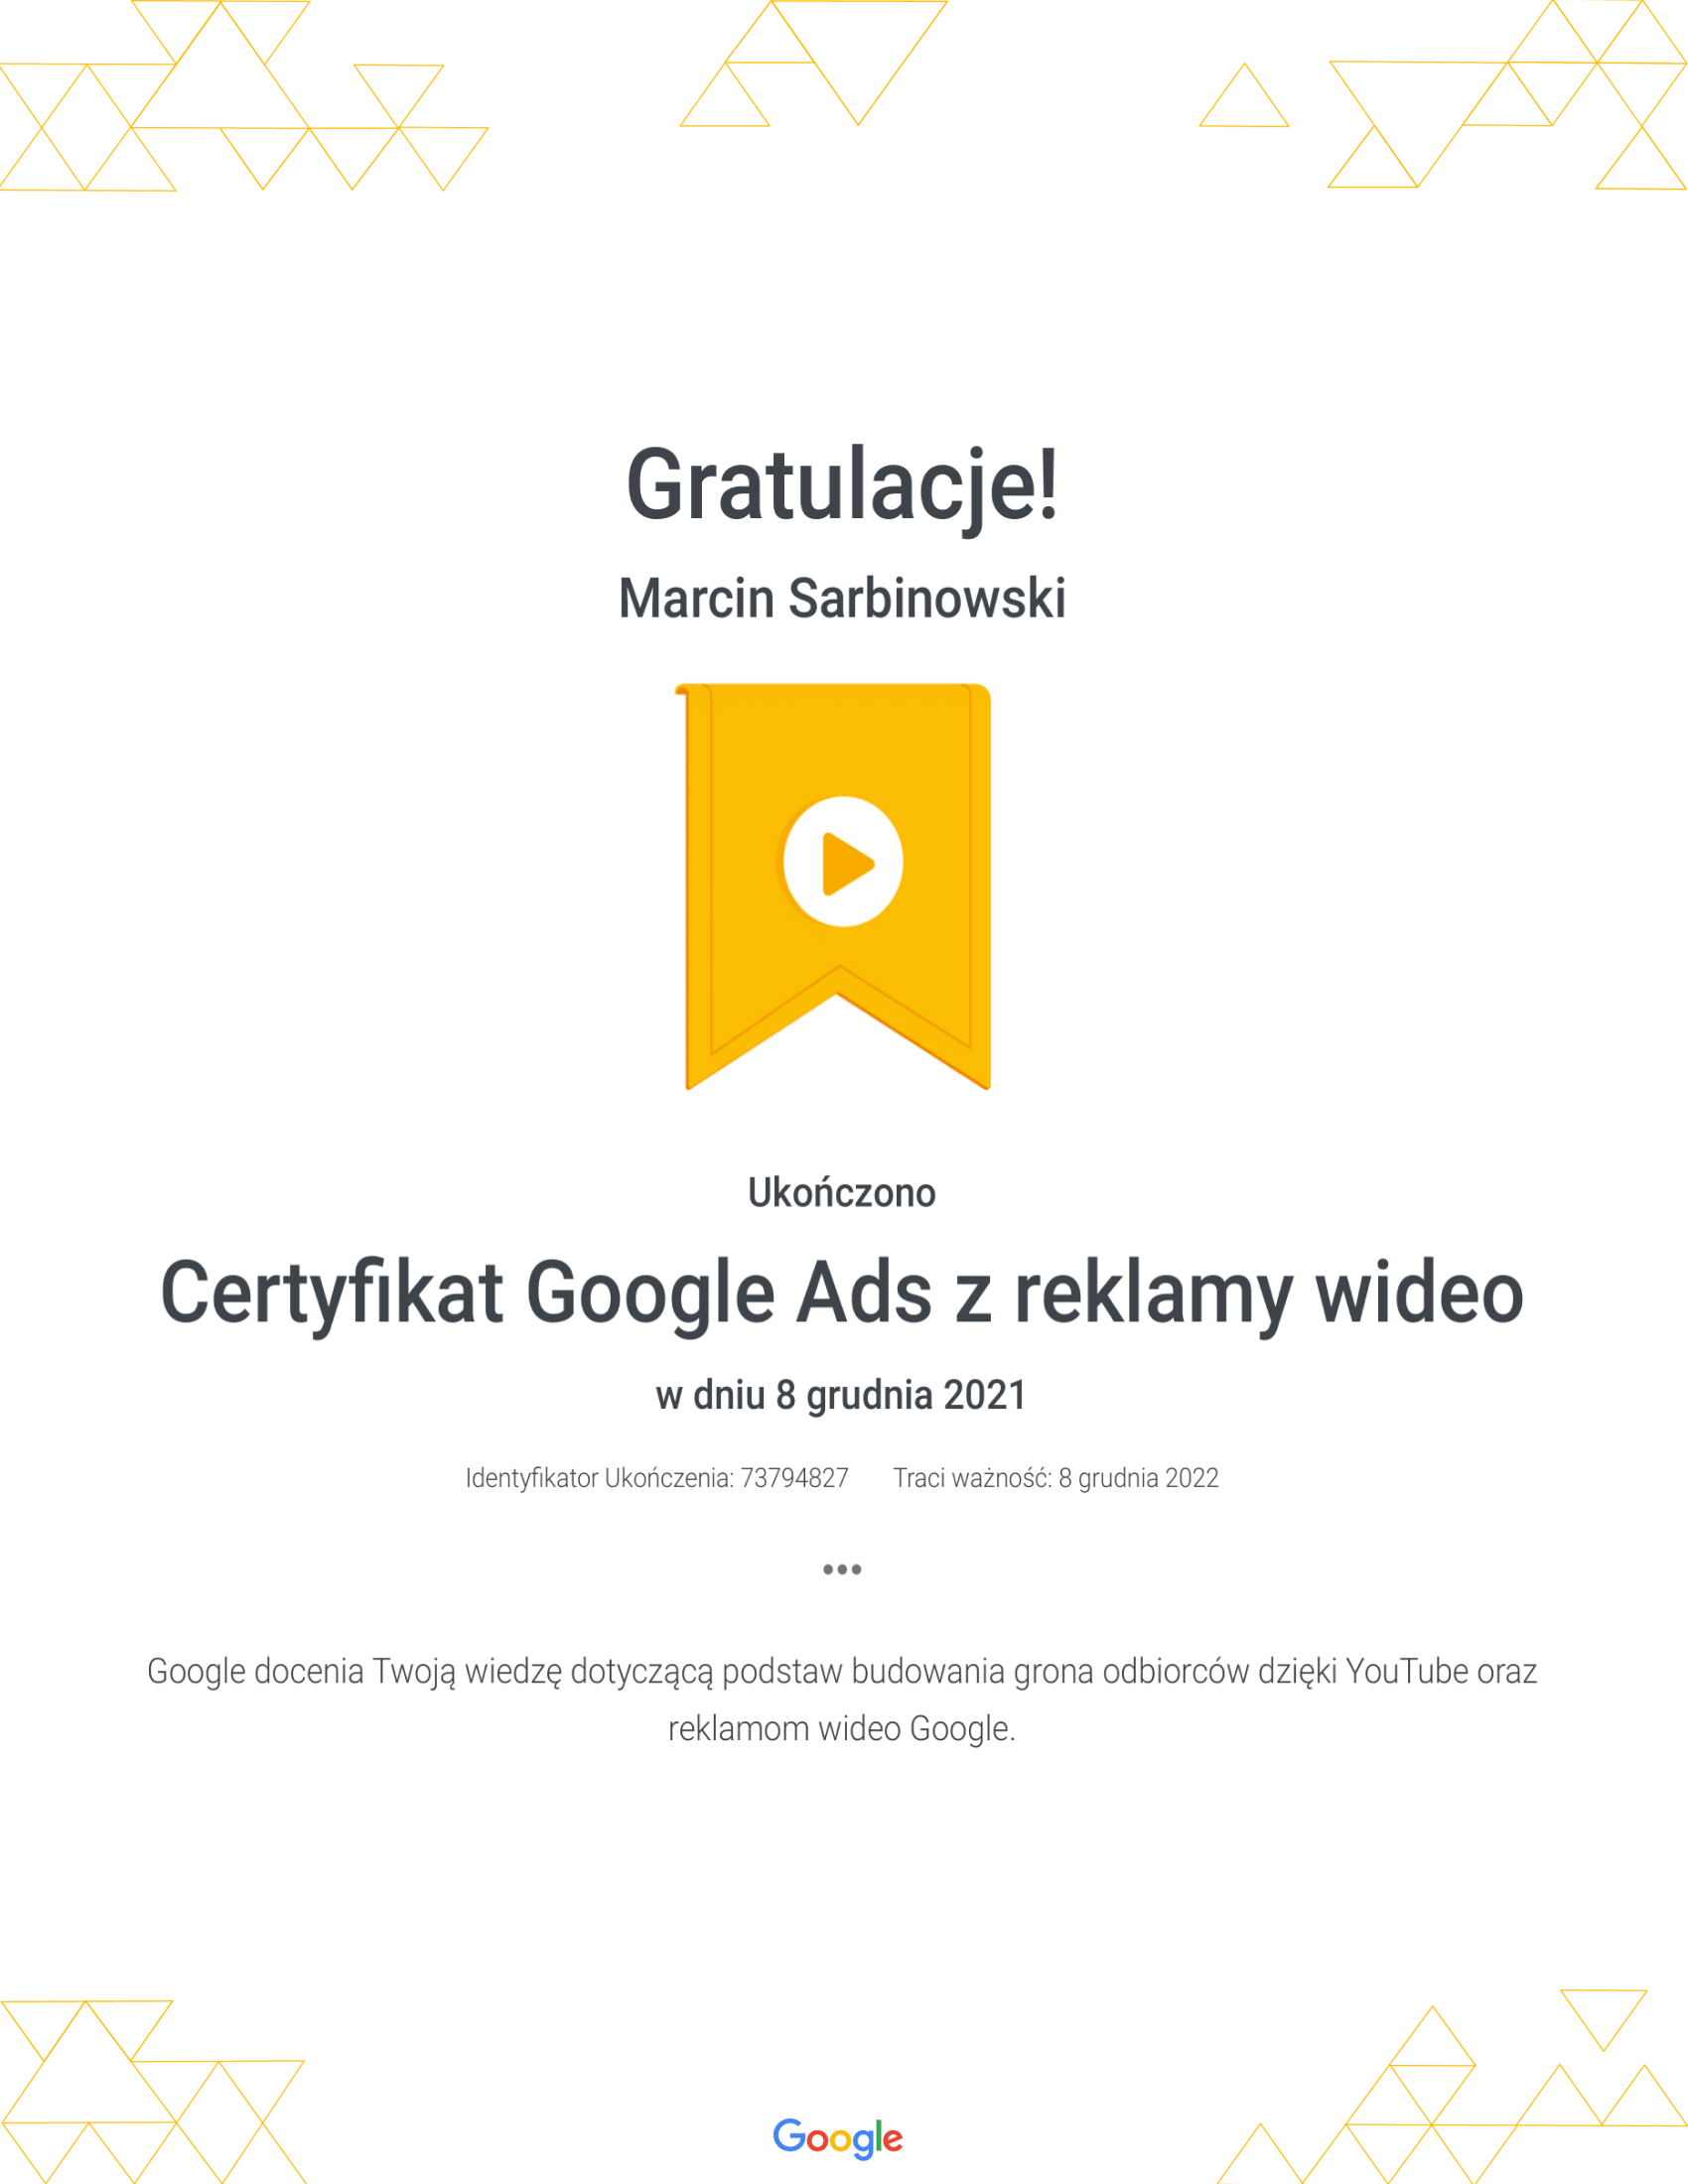 Google Marcin - reklama wideo